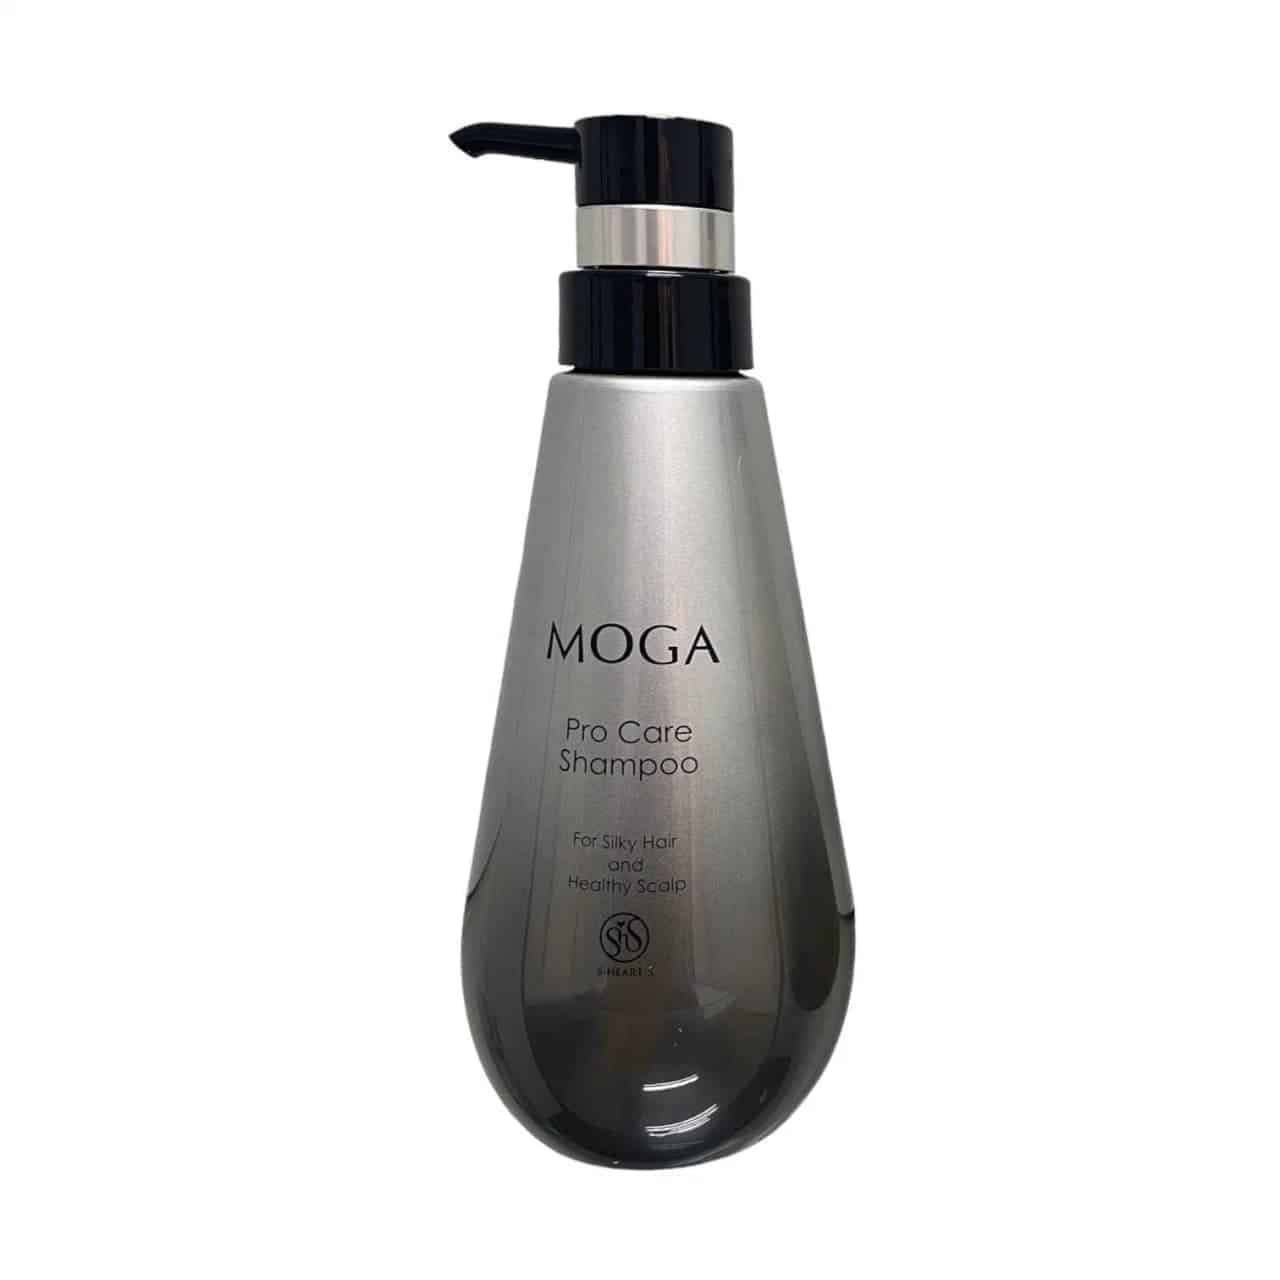 MOGA Pro Care Shampoo